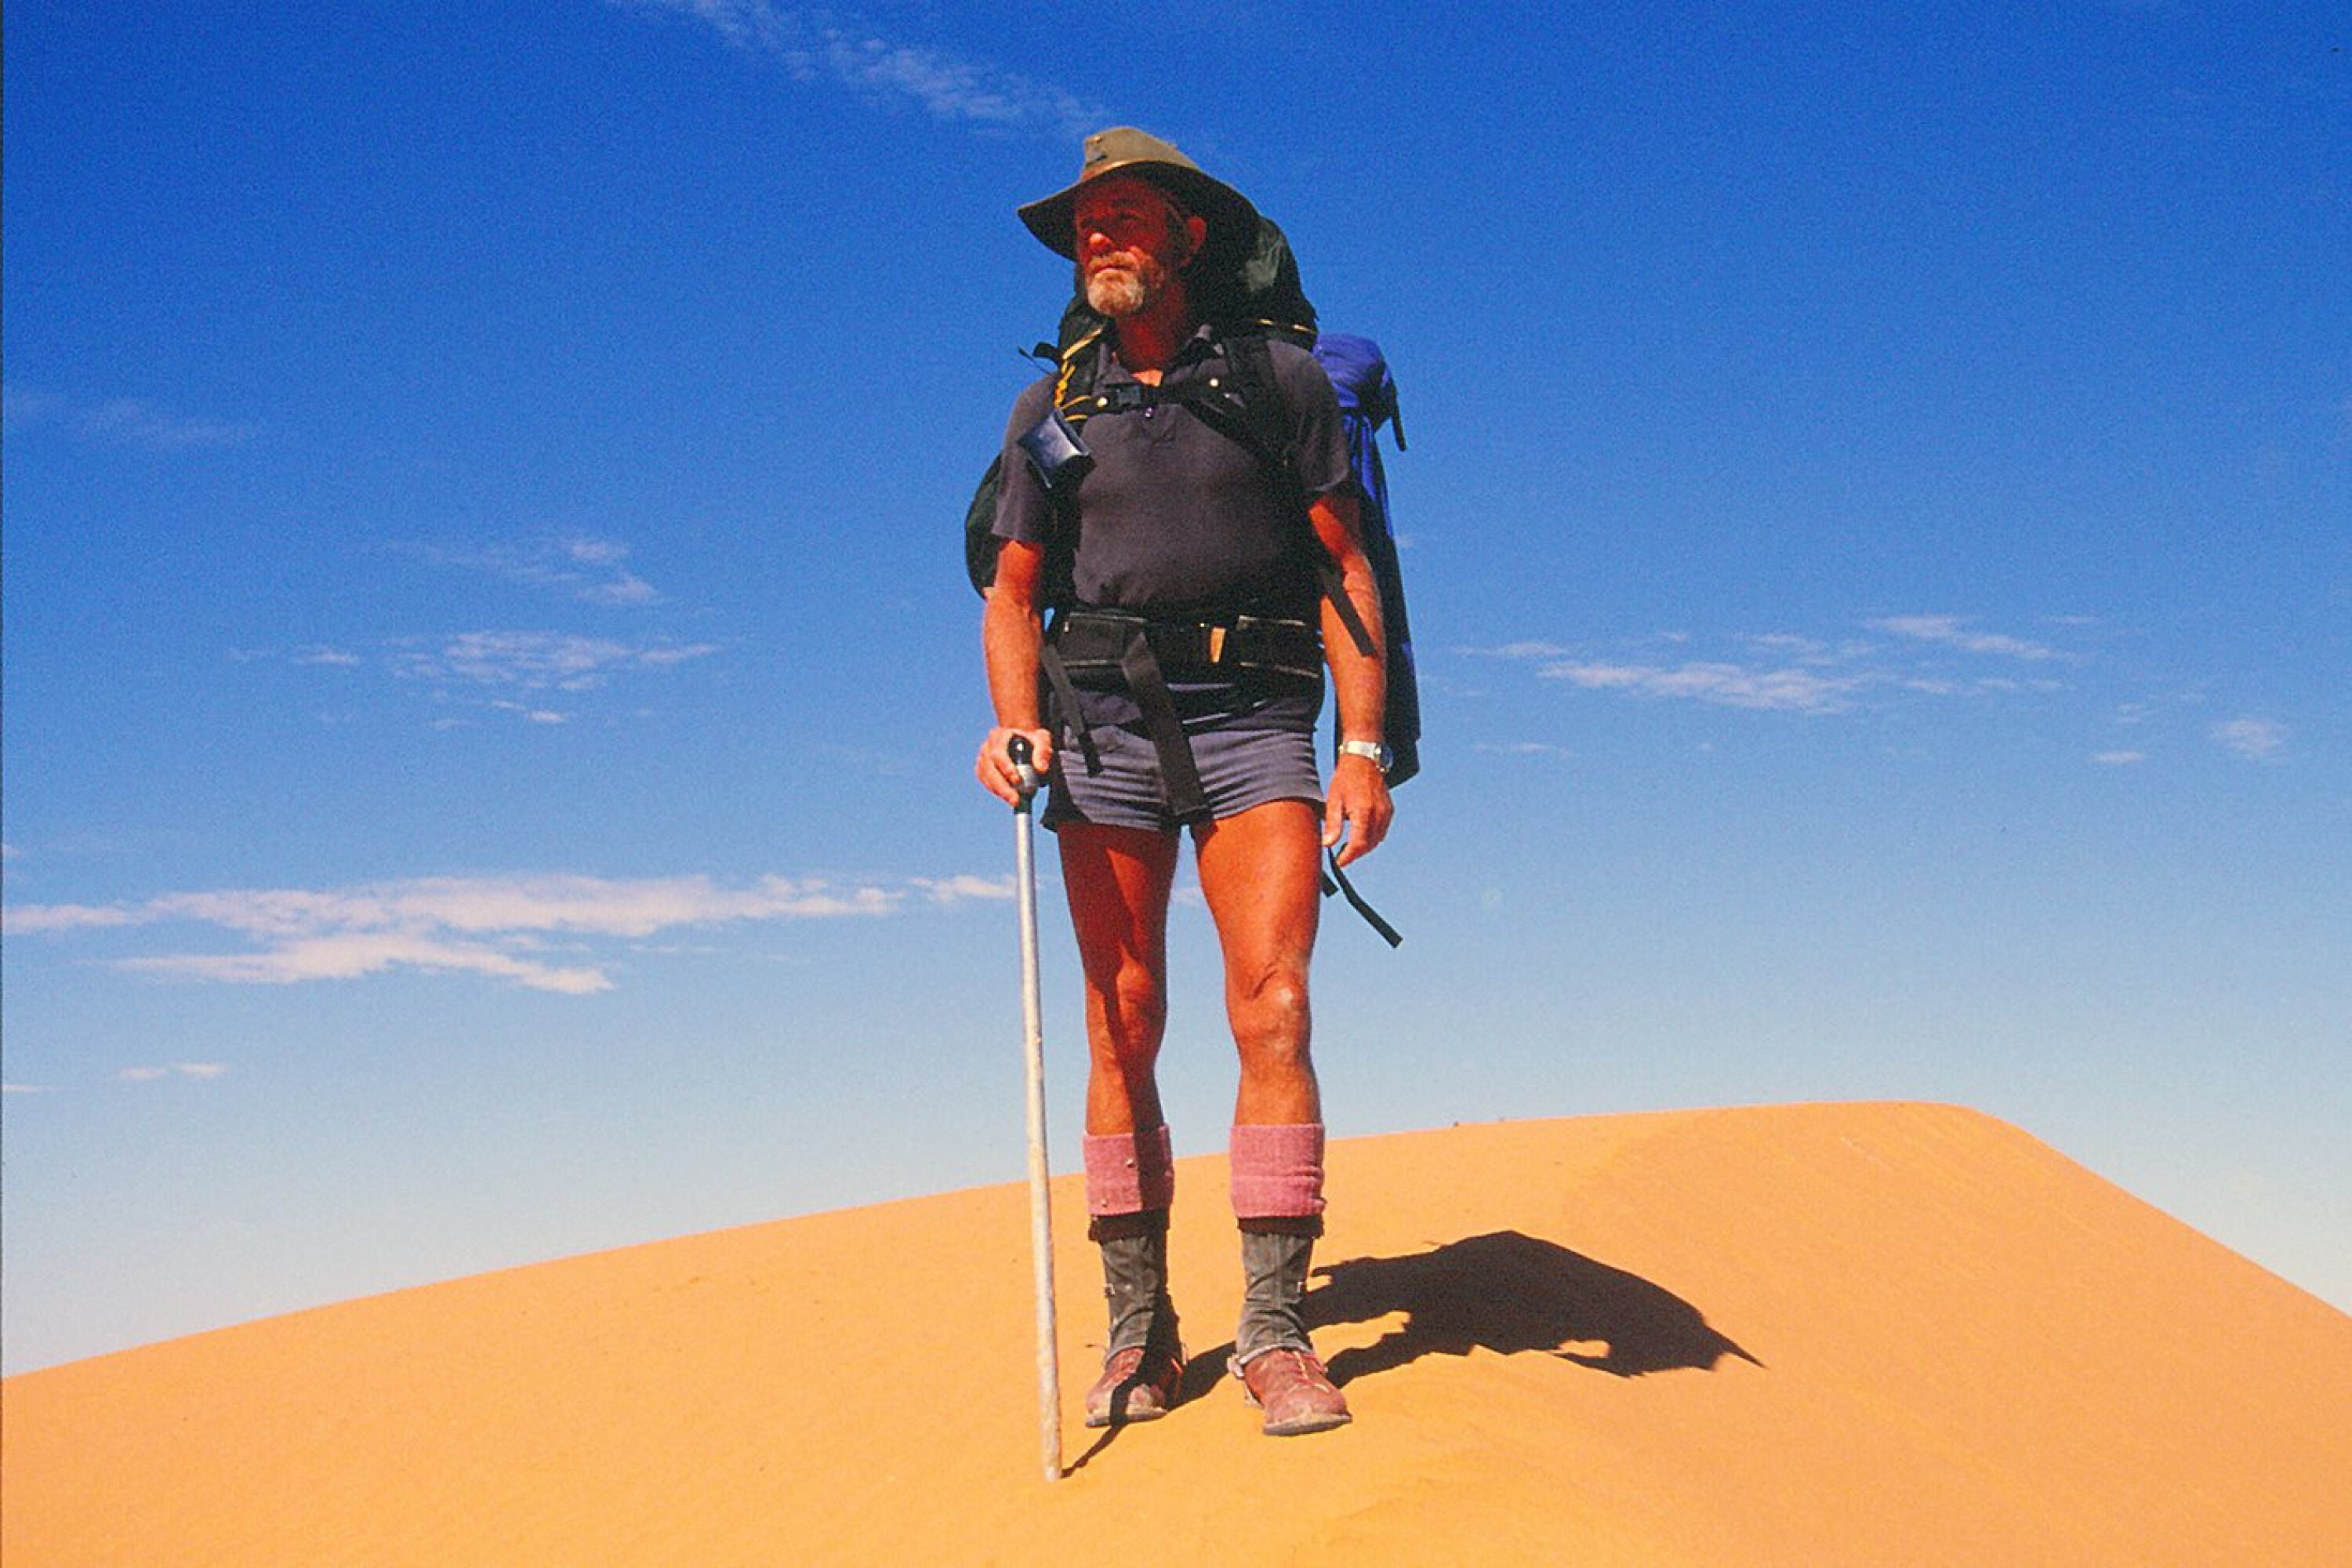 bcb009fc441/outback adventurer denis bartell jpg